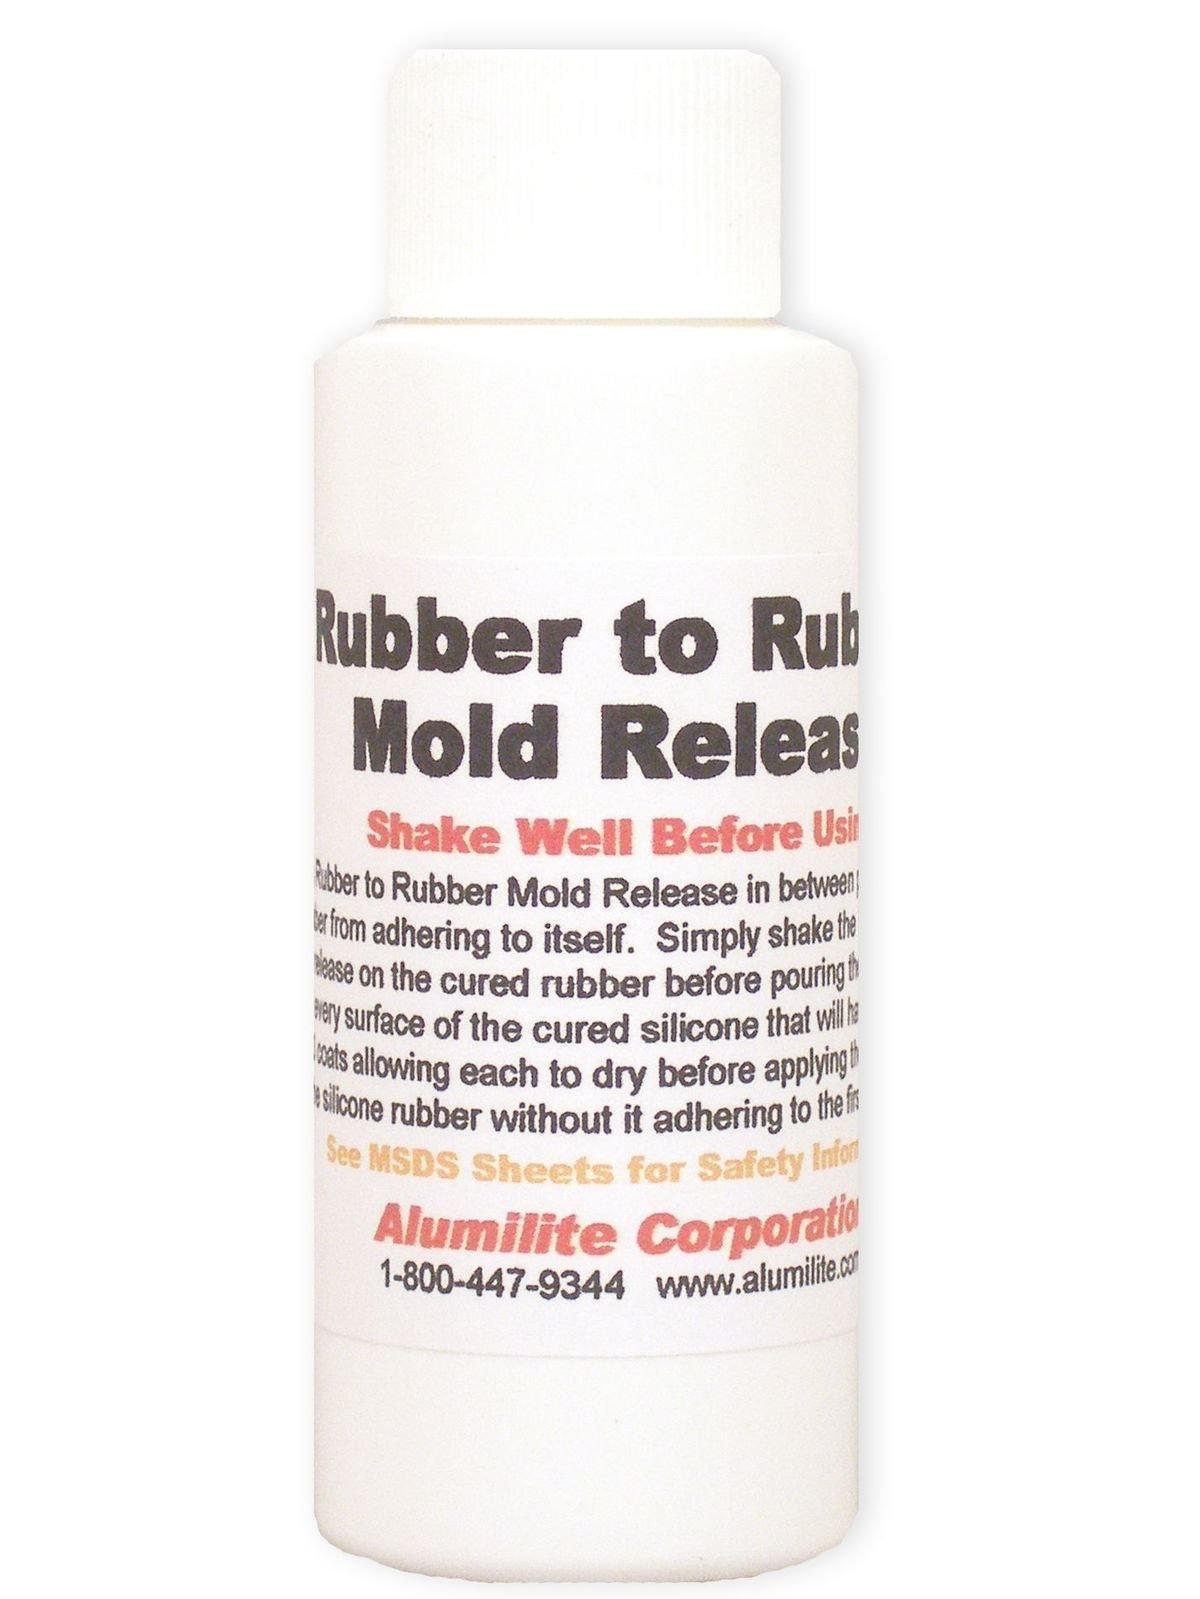 Alumilite Rubber to Rubber Mold Release